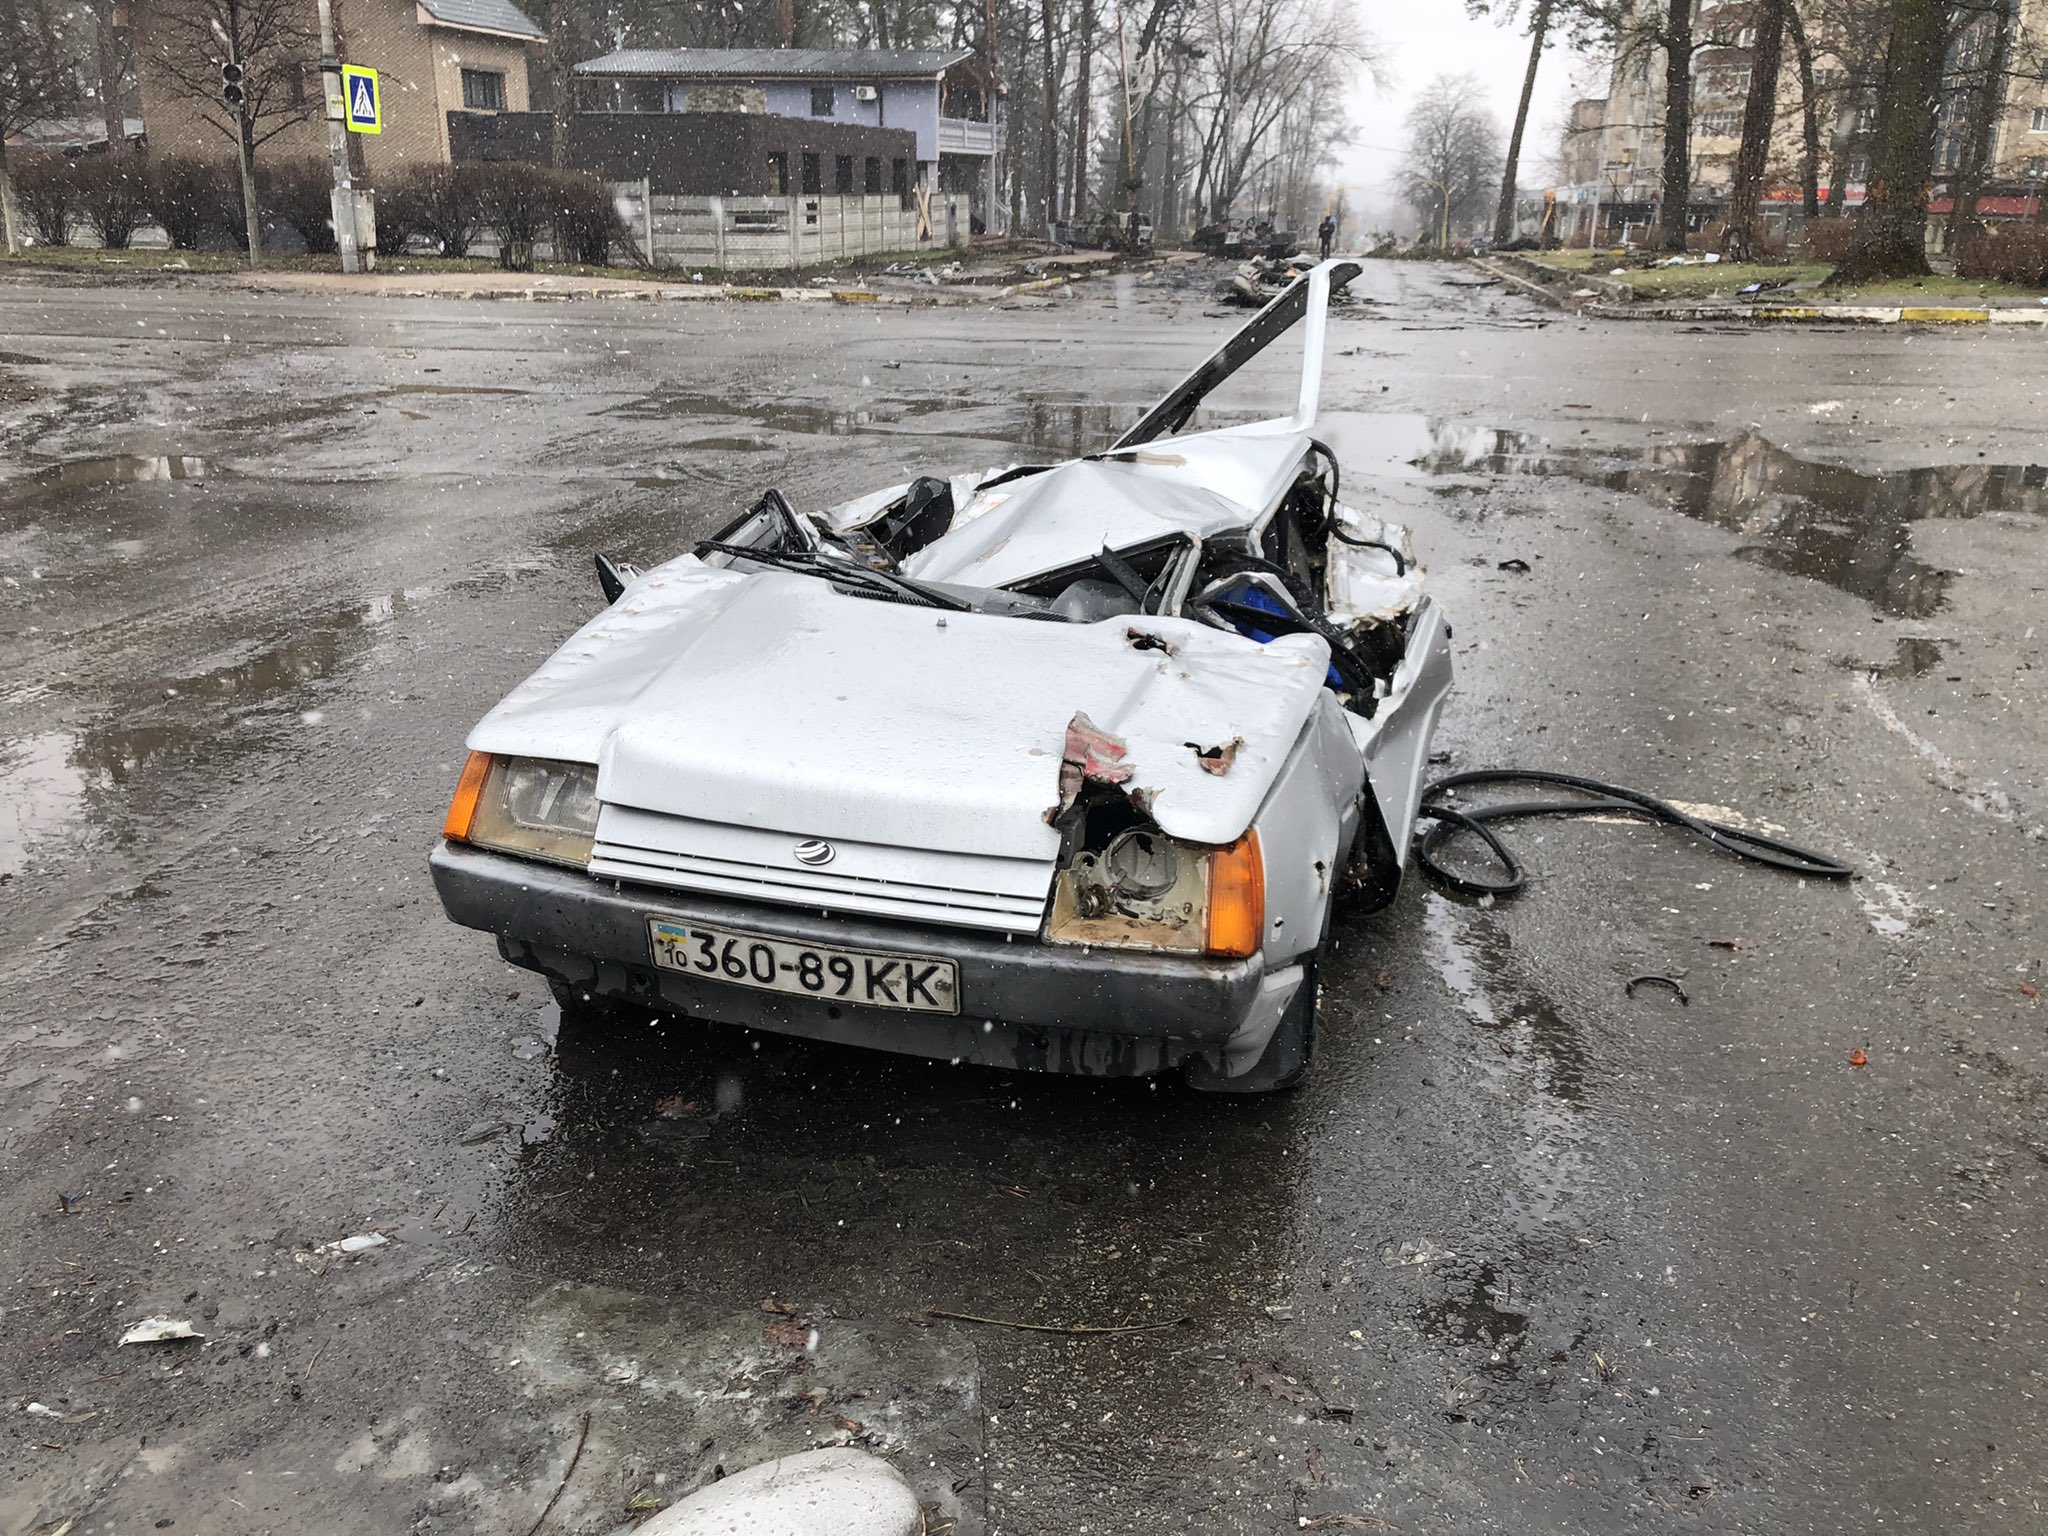 Раздавленный автомобиль с человеком внутри. Буча. Украина